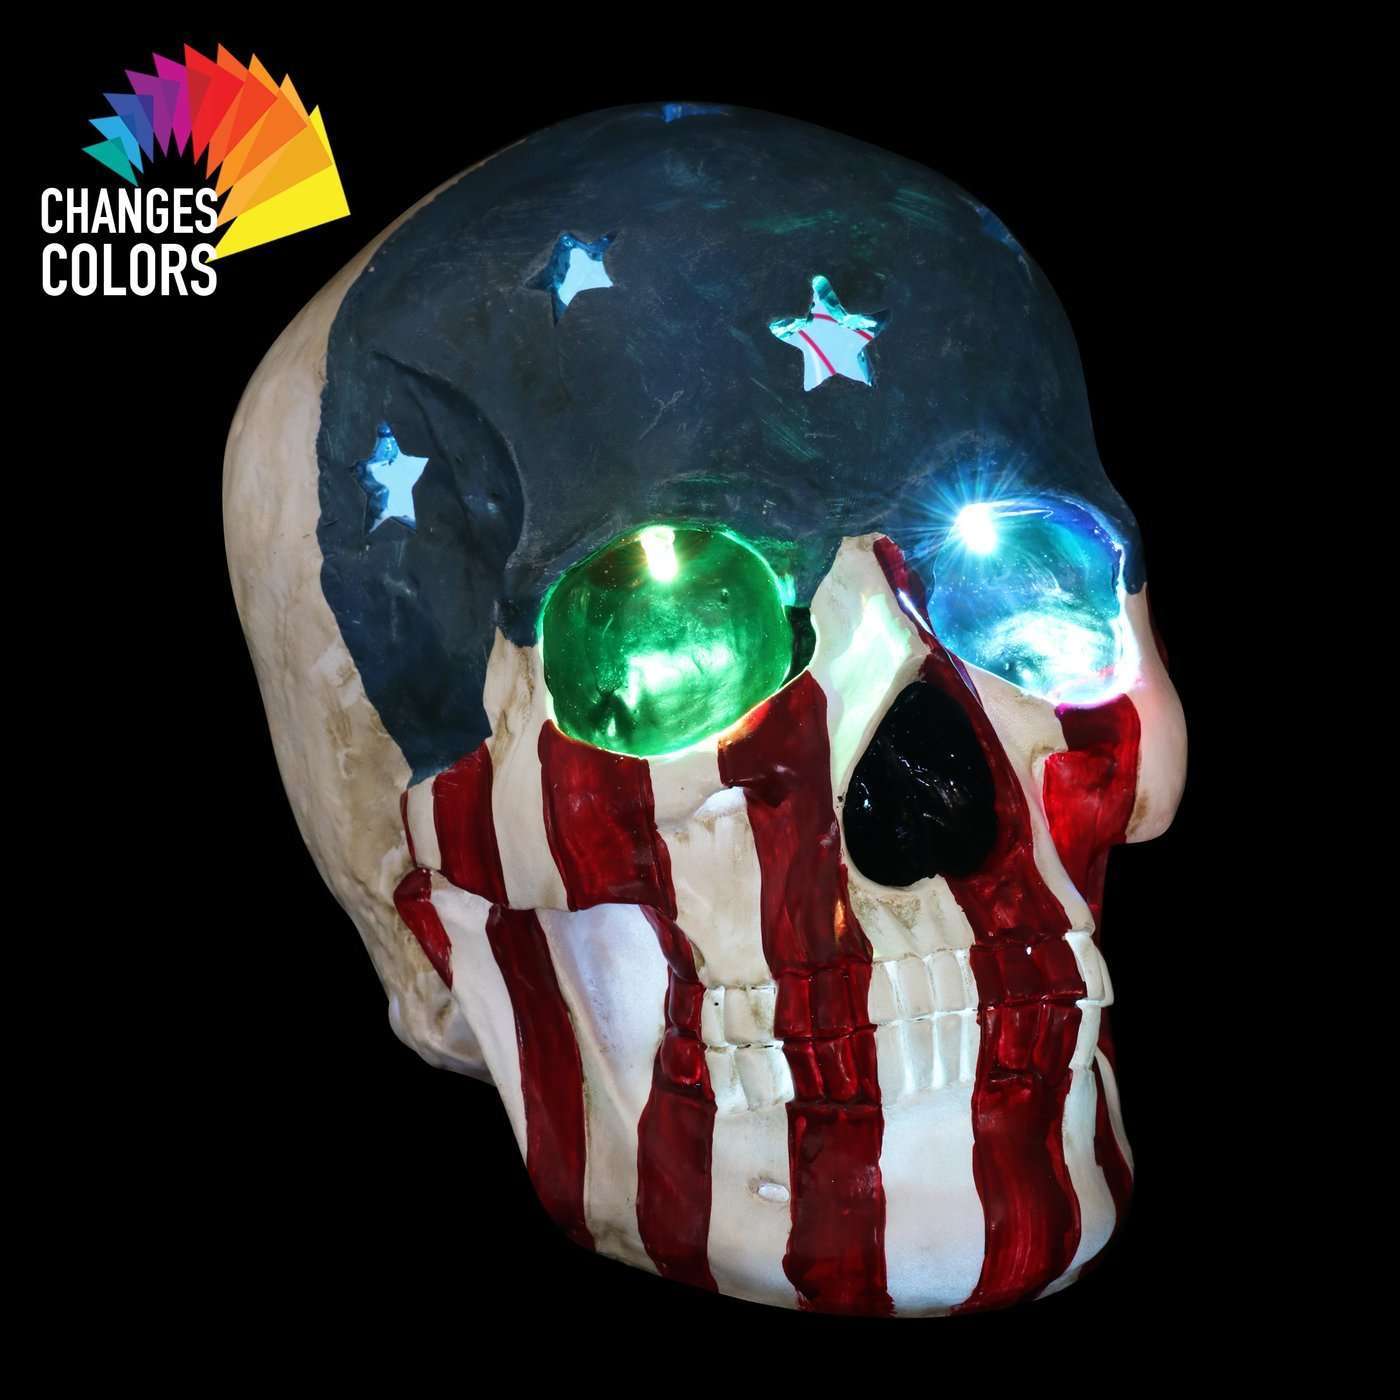 Skull With USA Flag and LEDs